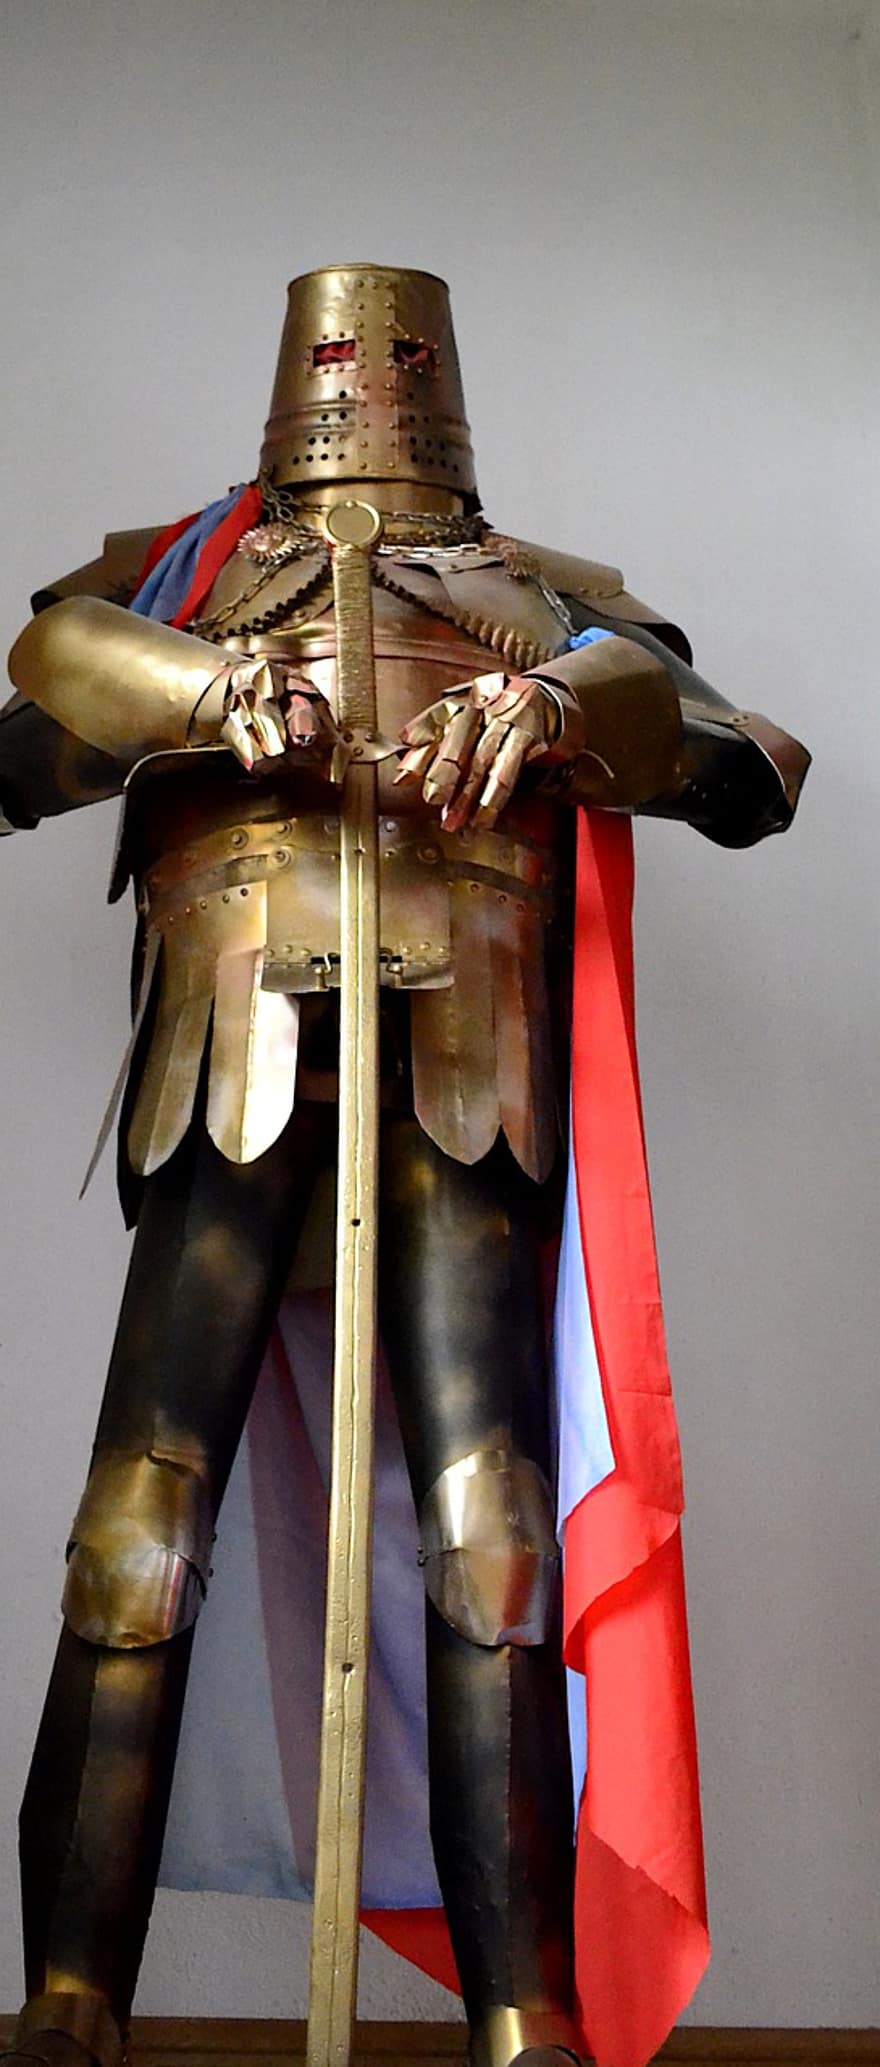 rytíř, zbroj, meč, ocel, helma, prsní deska, pelerína